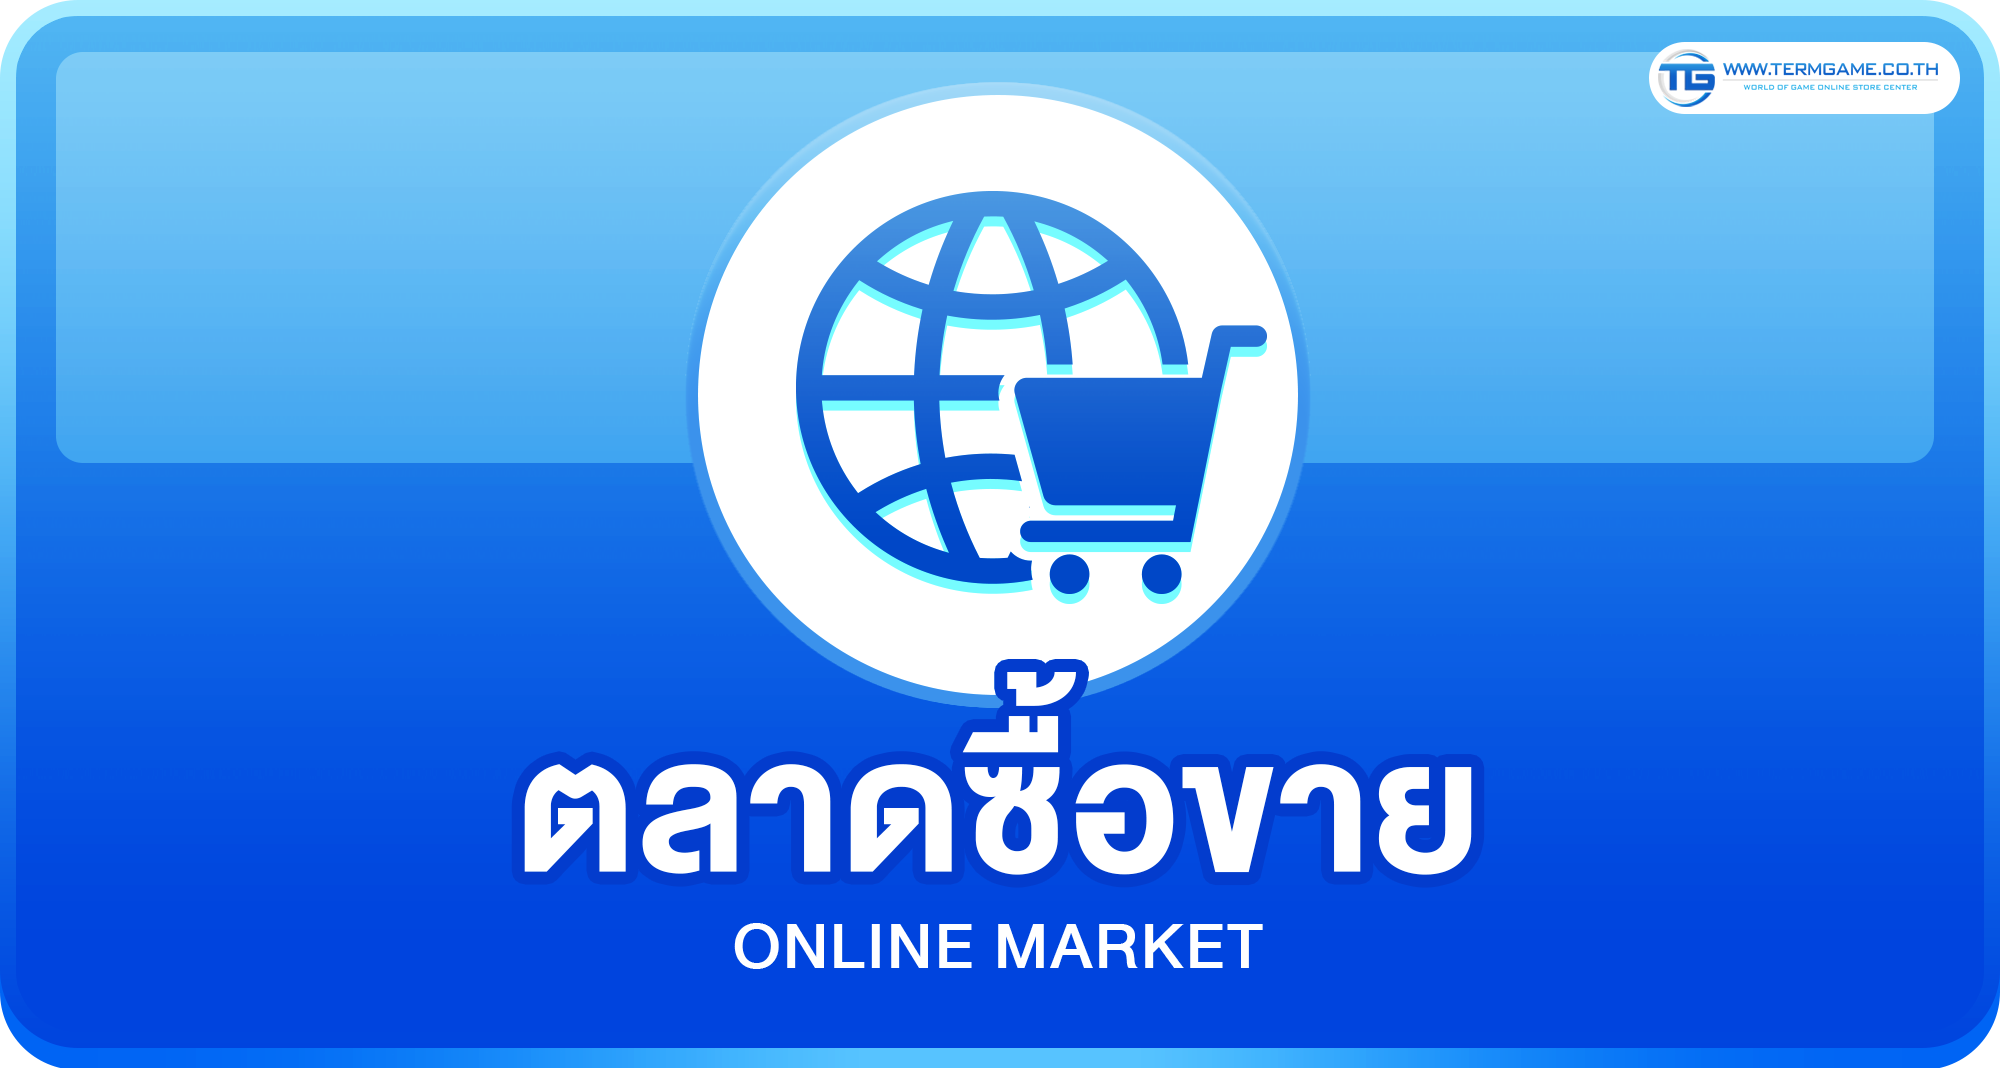 online market